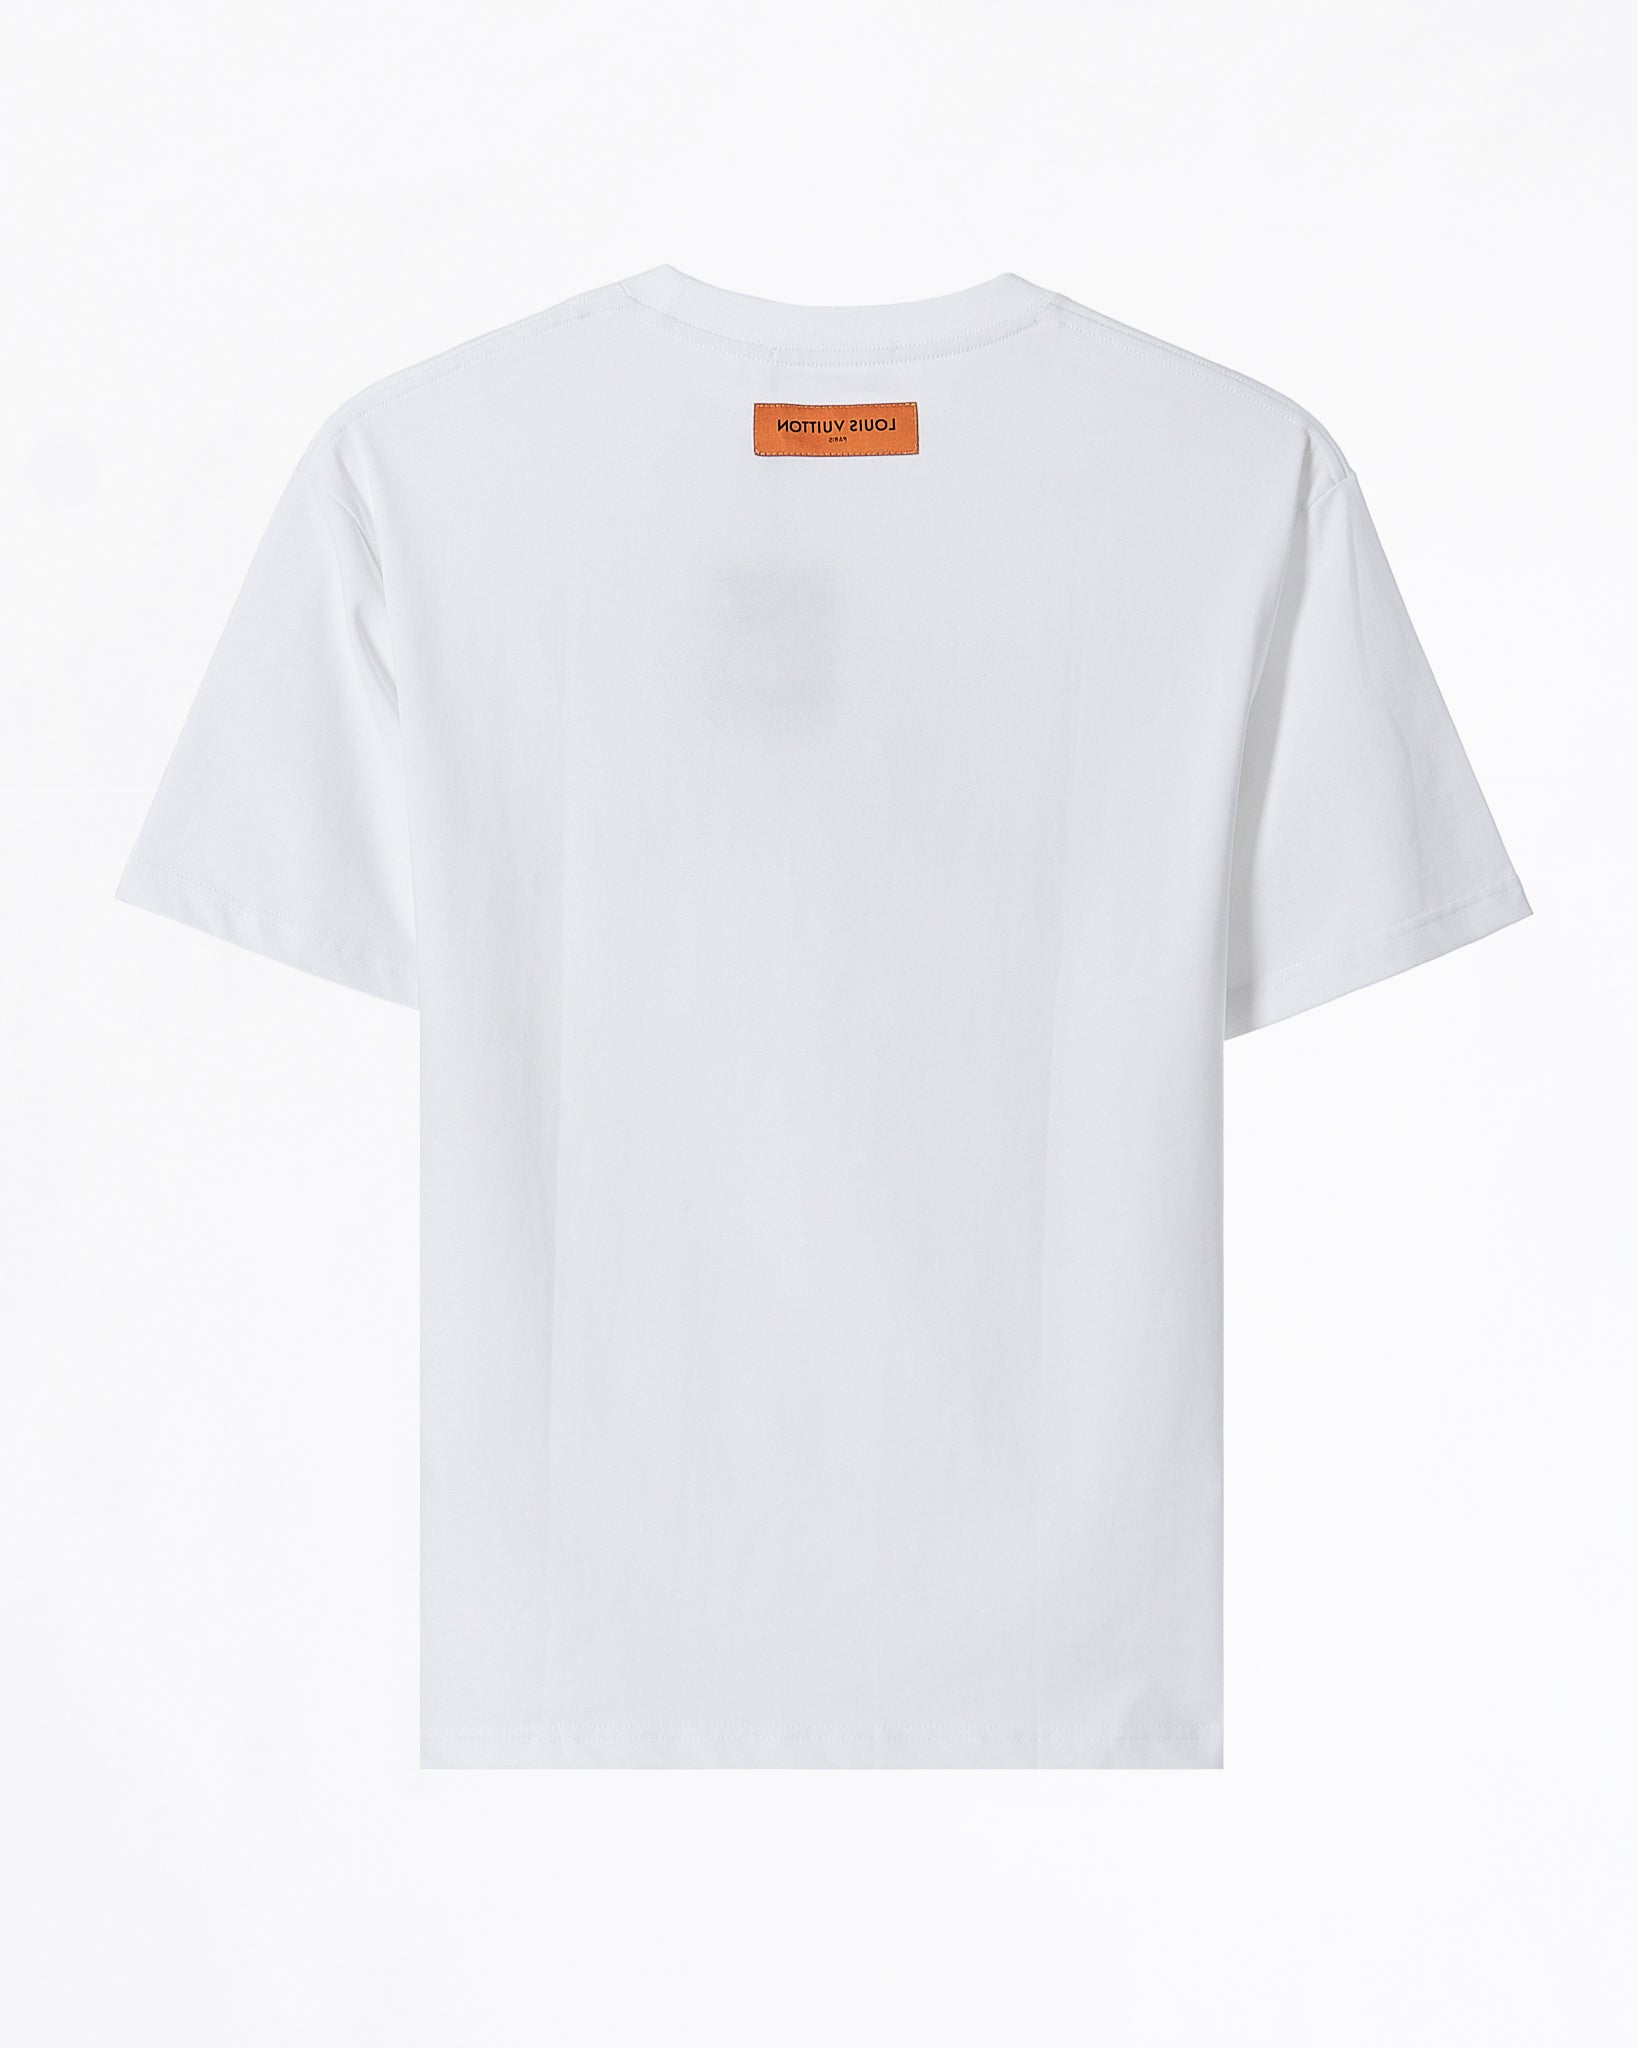 LV Logo Ptinted Over Size Men White T-Shirt 52.90